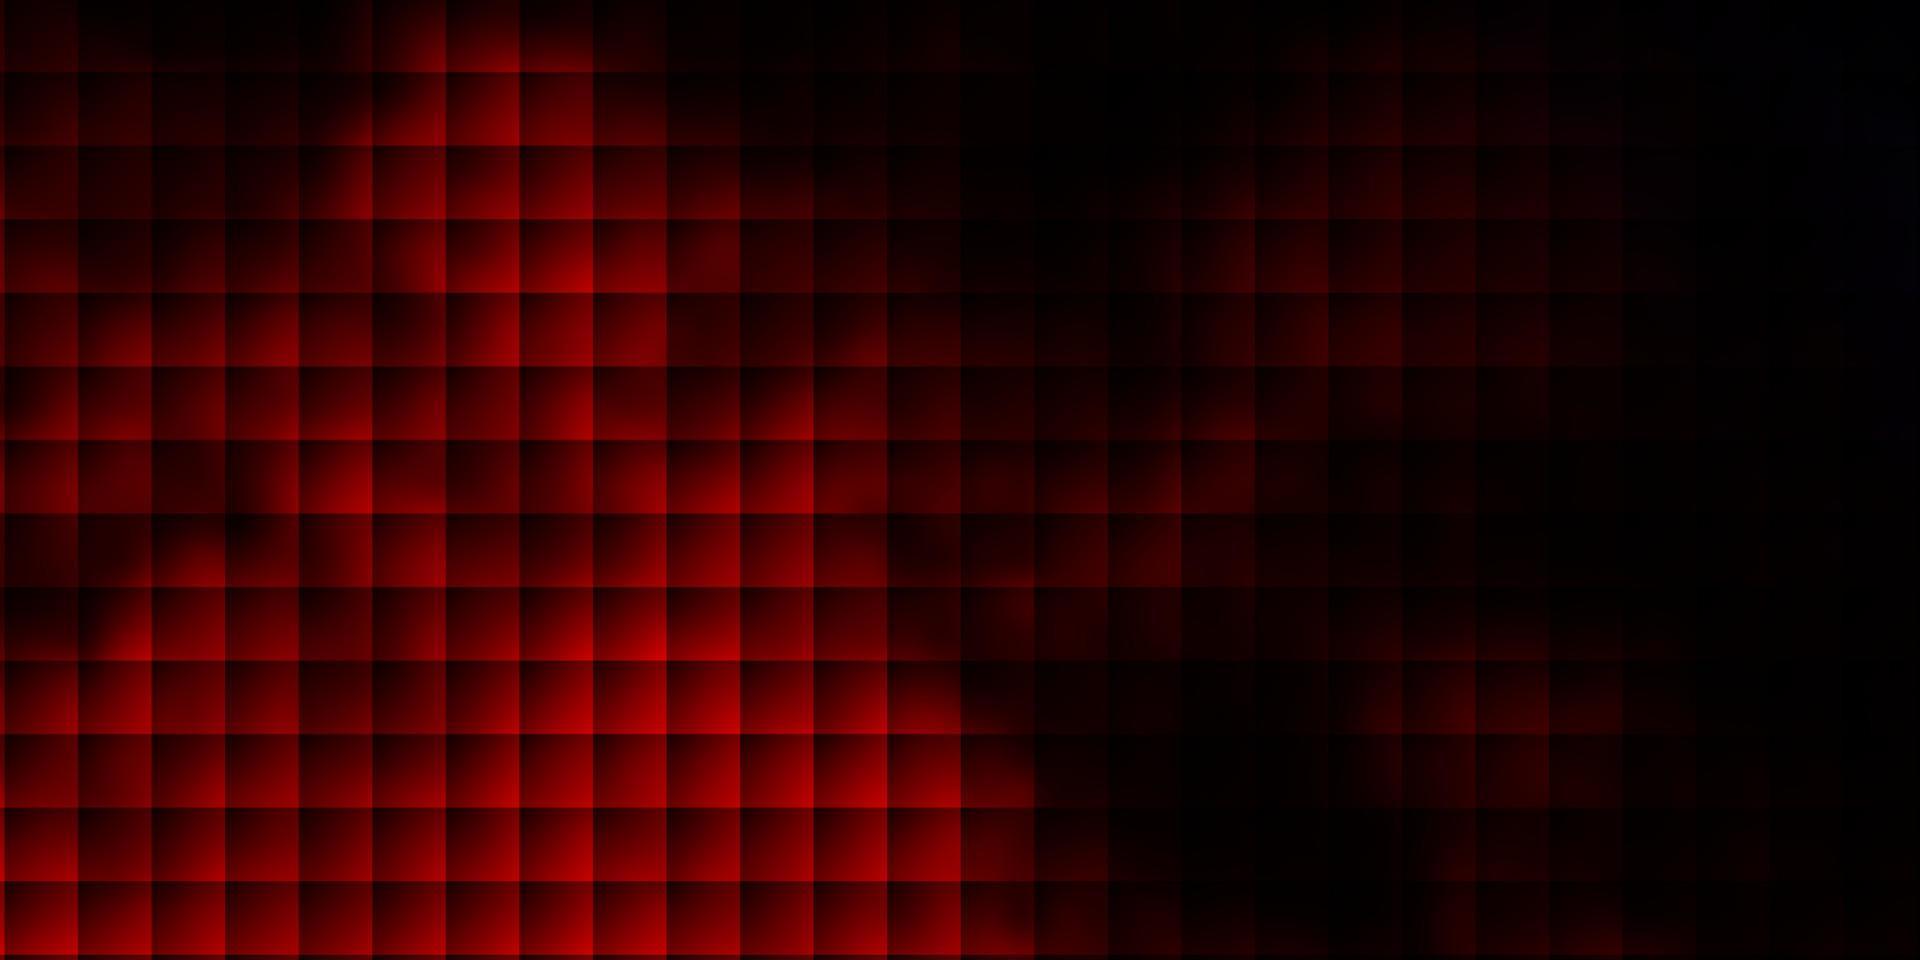 Fondo de vector rojo oscuro en estilo poligonal.